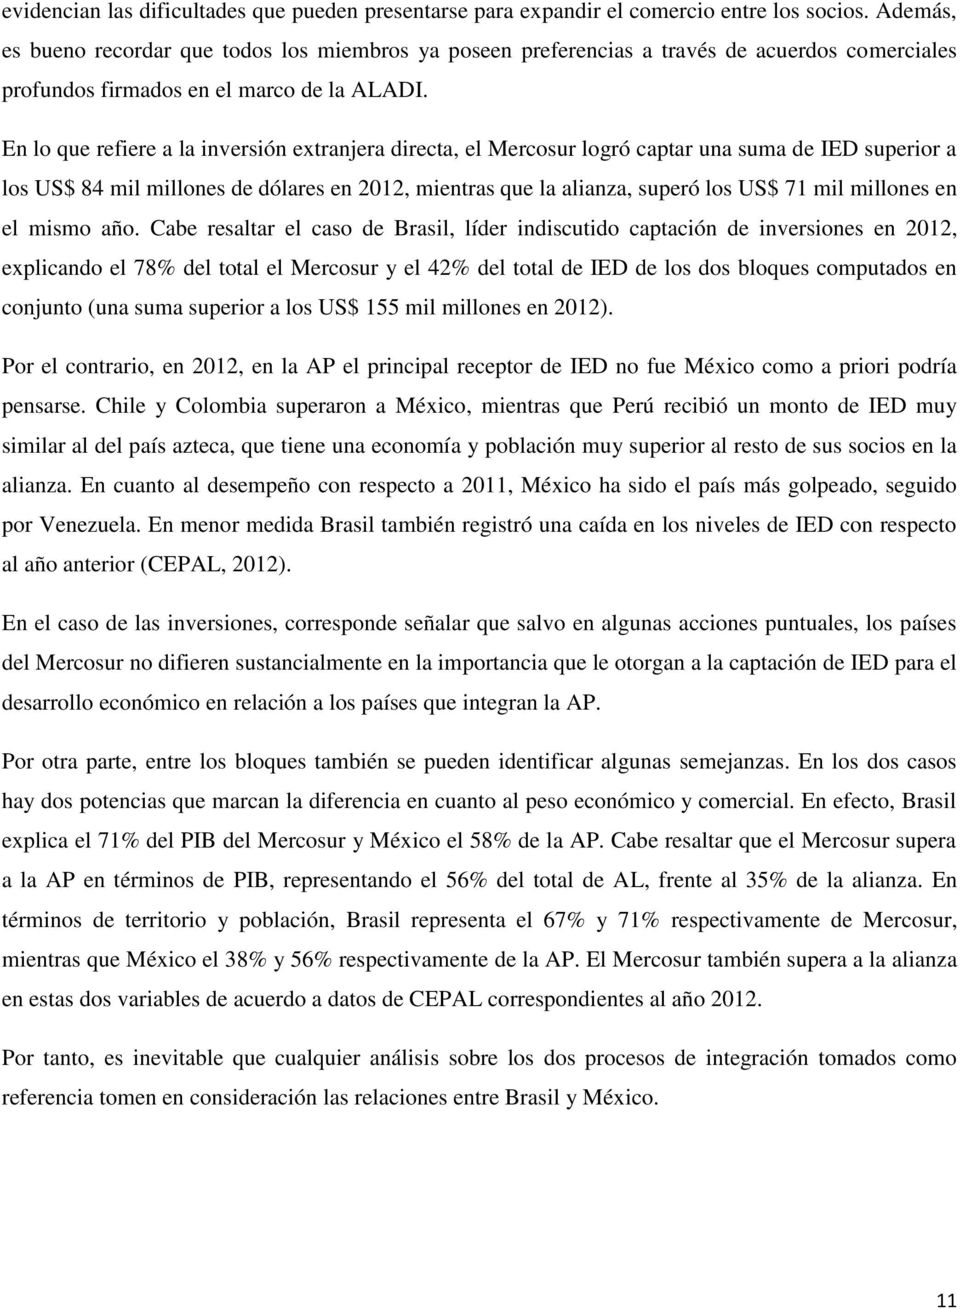 En lo que refiere a la inversión extranjera directa, el Mercosur logró captar una suma de IED superior a los US$ 84 mil millones de dólares en 2012, mientras que la alianza, superó los US$ 71 mil